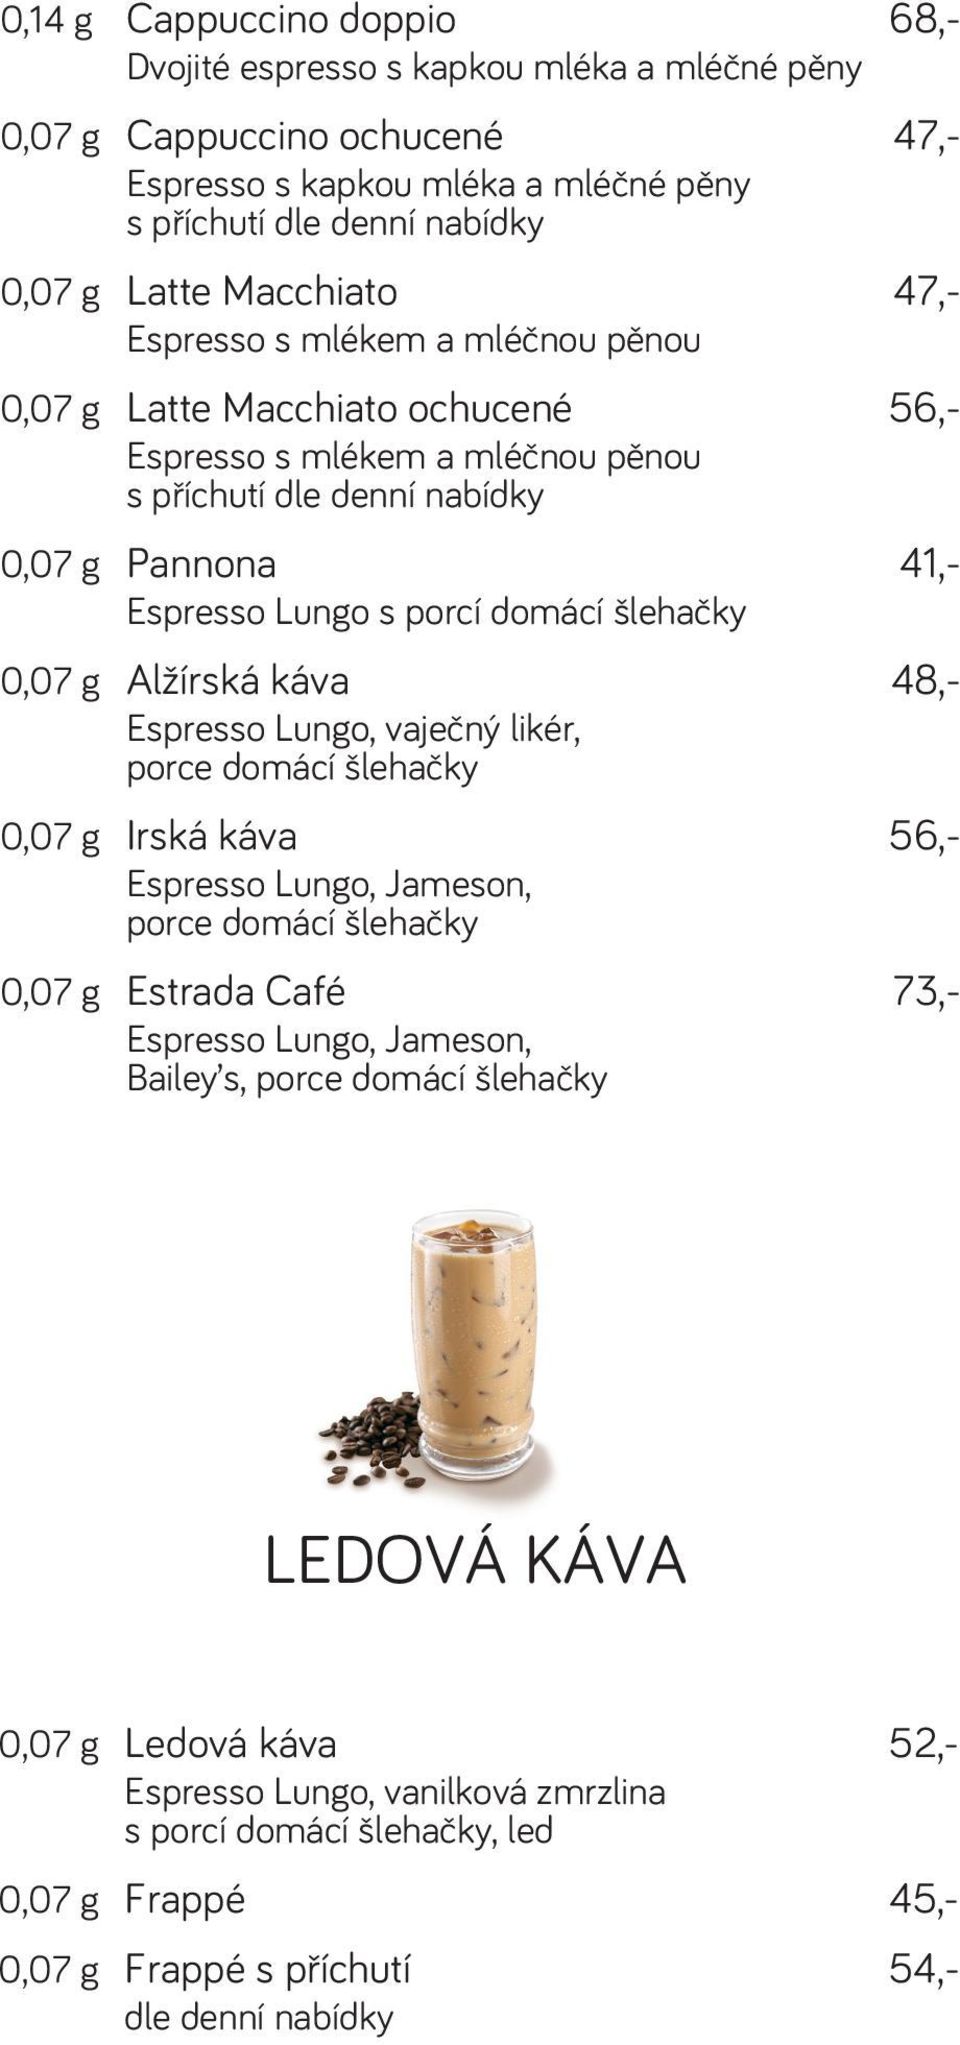 0,07 g Alžírská káva 48,- Espresso Lungo, vaječný likér, porce domácí šlehačky 0,07 g Irská káva 56,- Espresso Lungo, Jameson, porce domácí šlehačky 0,07 g Estrada Café 73,- Espresso Lungo, Jameson,